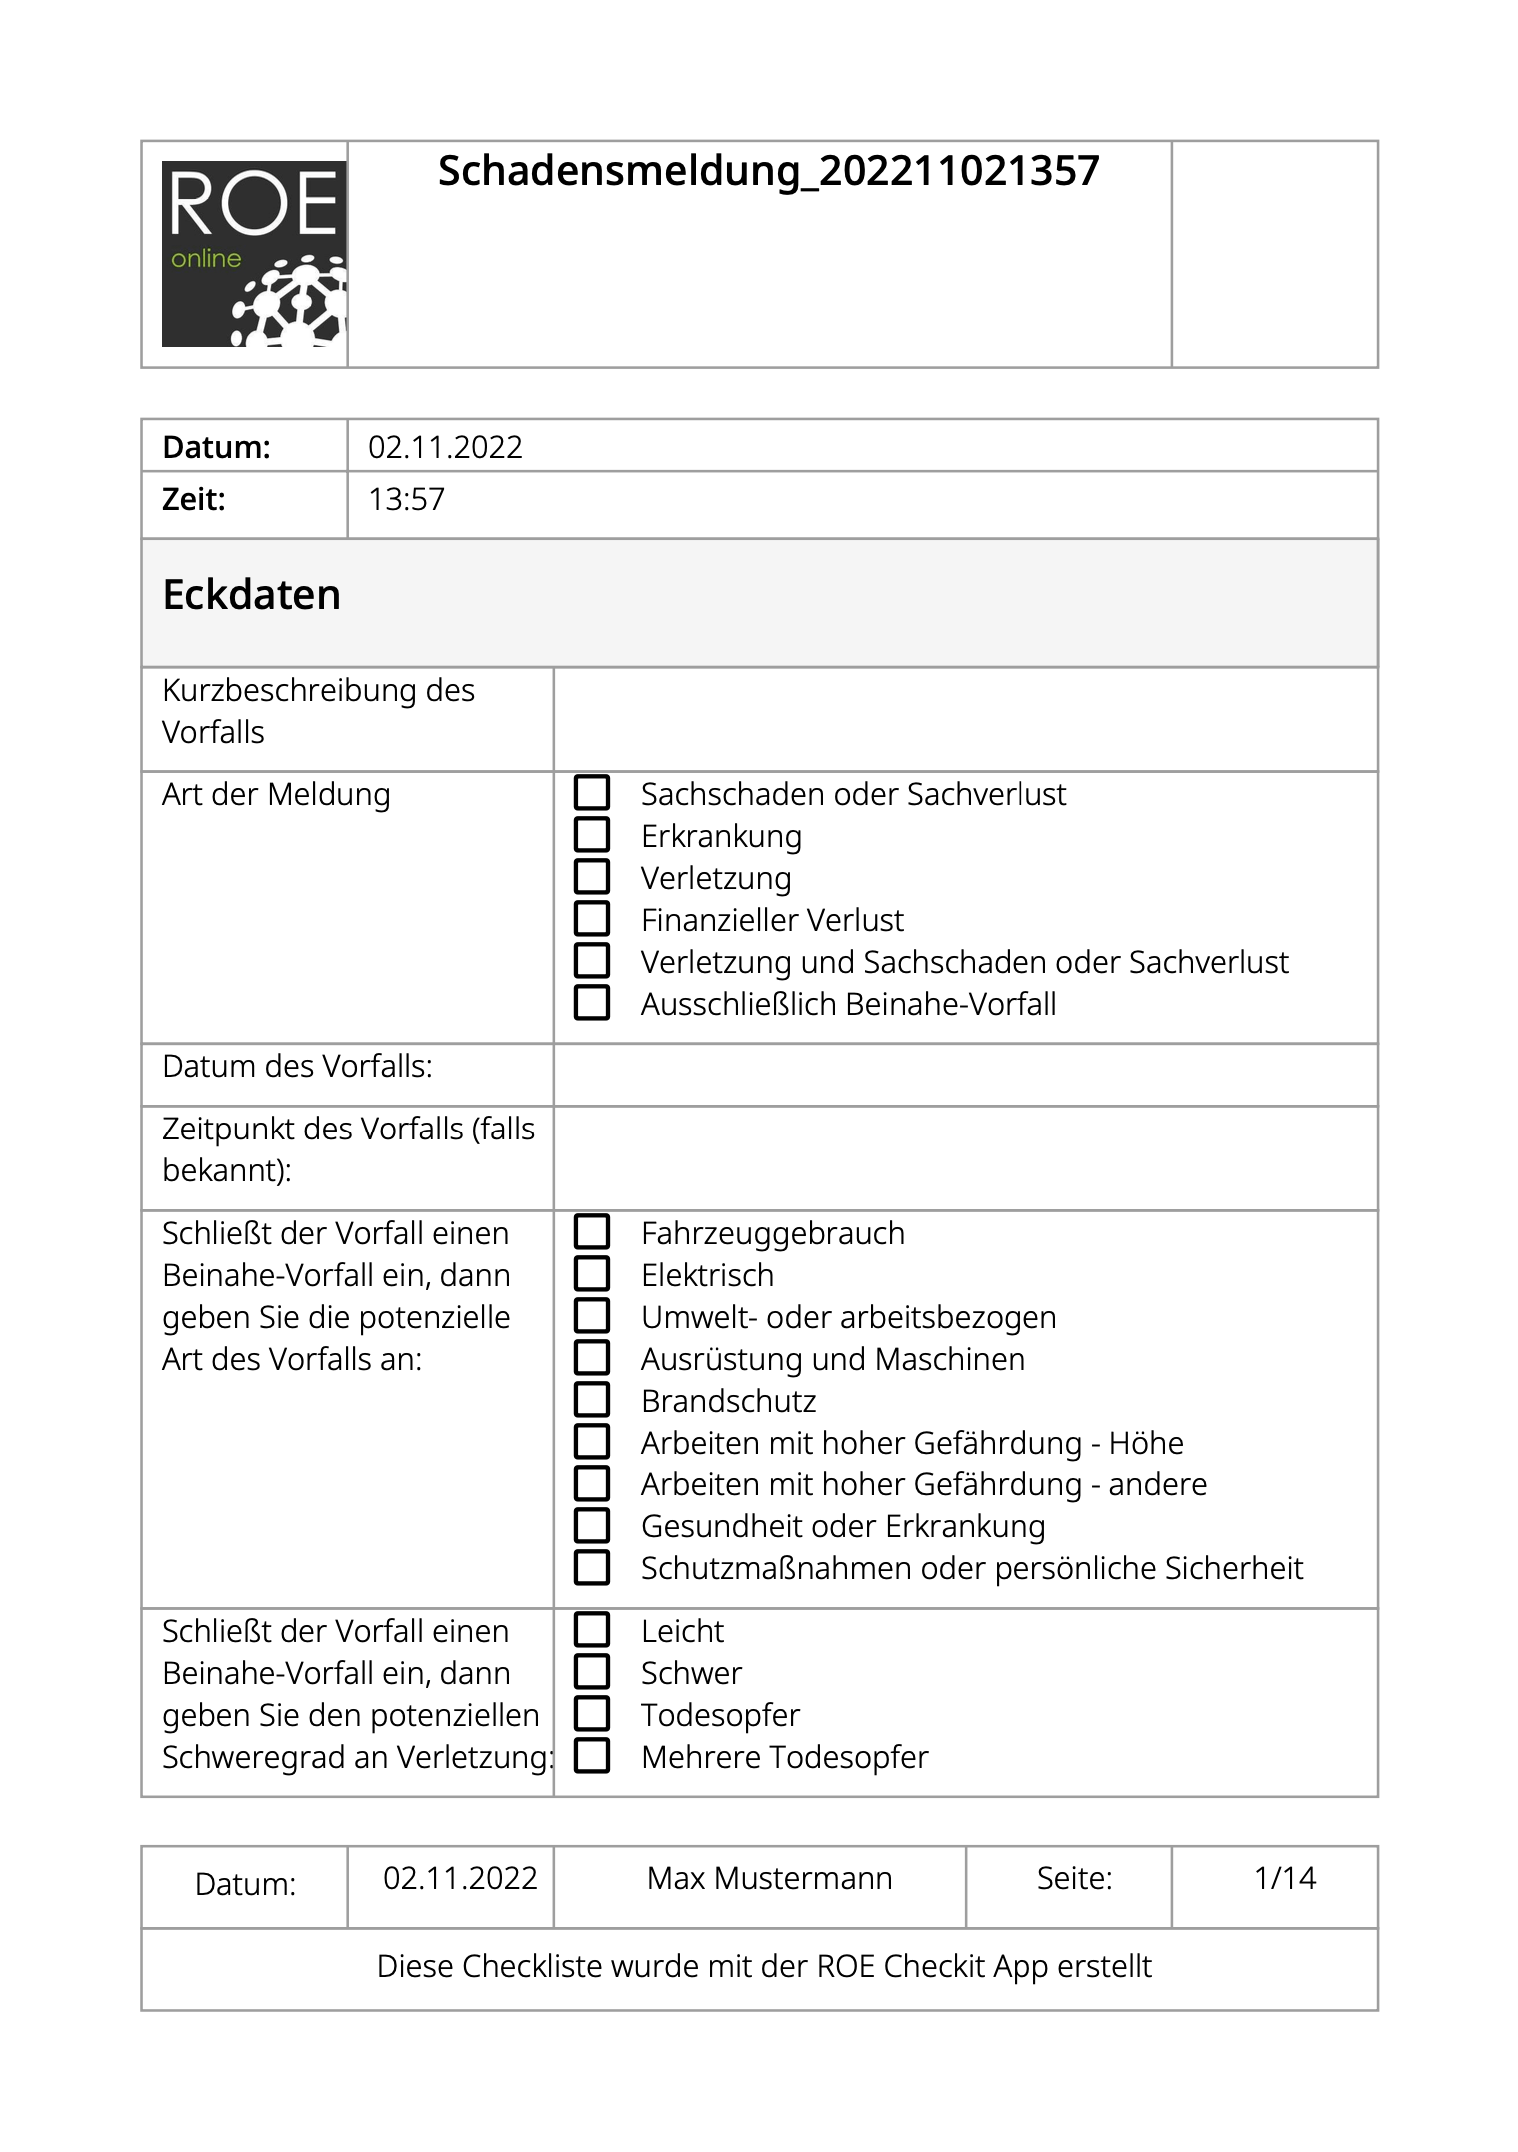 Das Bild zeigt die PDF-Datei die ausgegeben wird, wenn die Checkliste "Schadensmeldung" ausgefüllt wird.